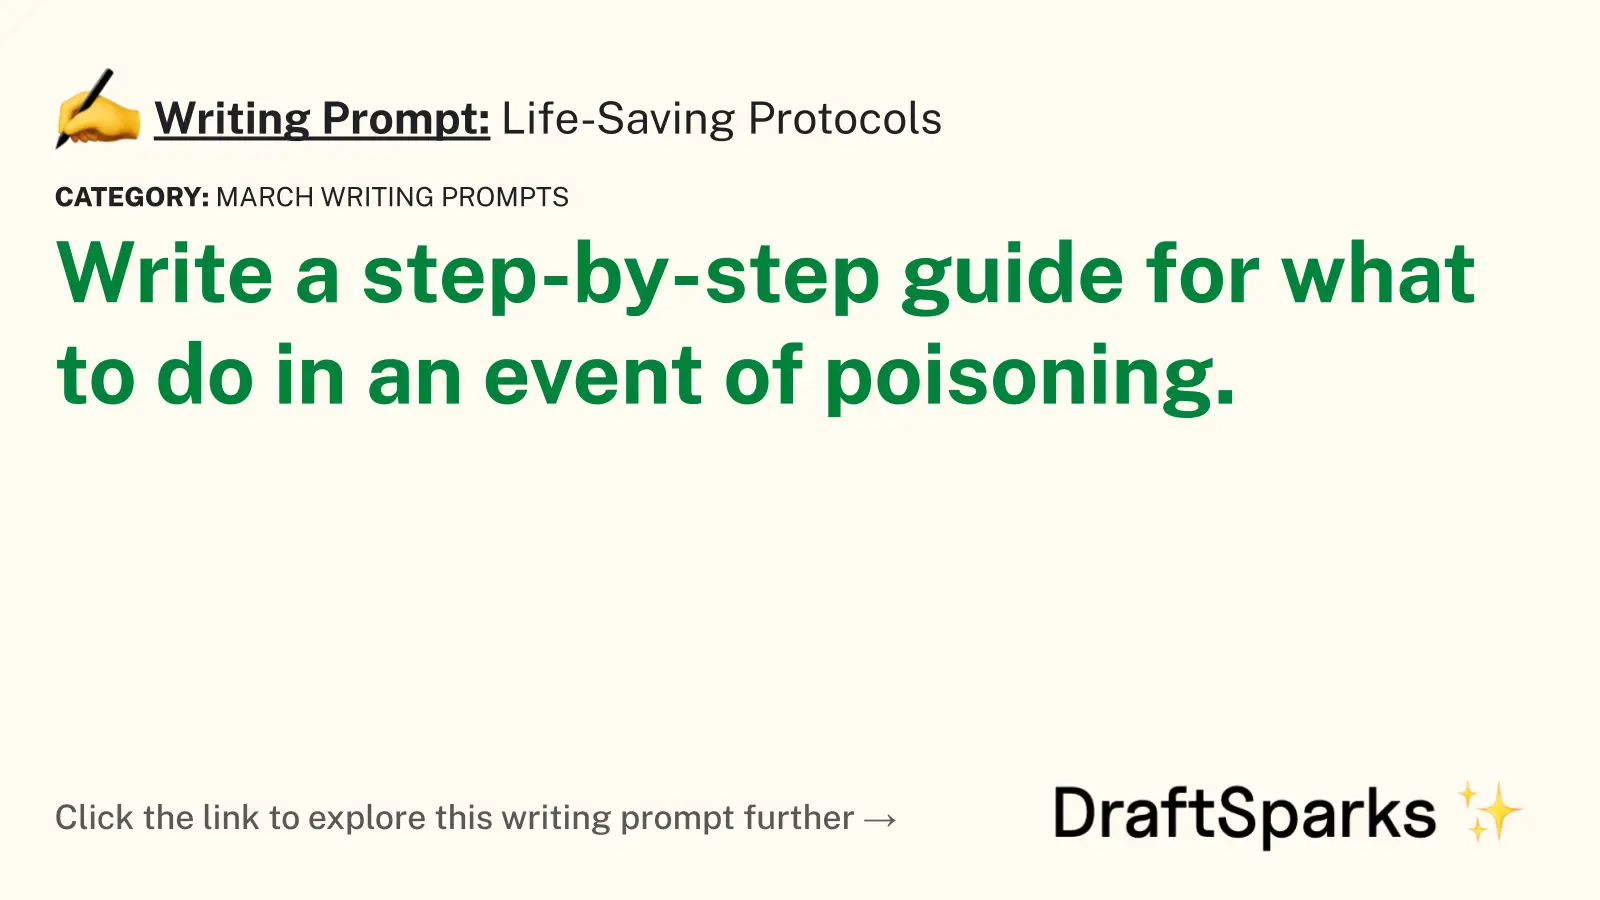 Life-Saving Protocols